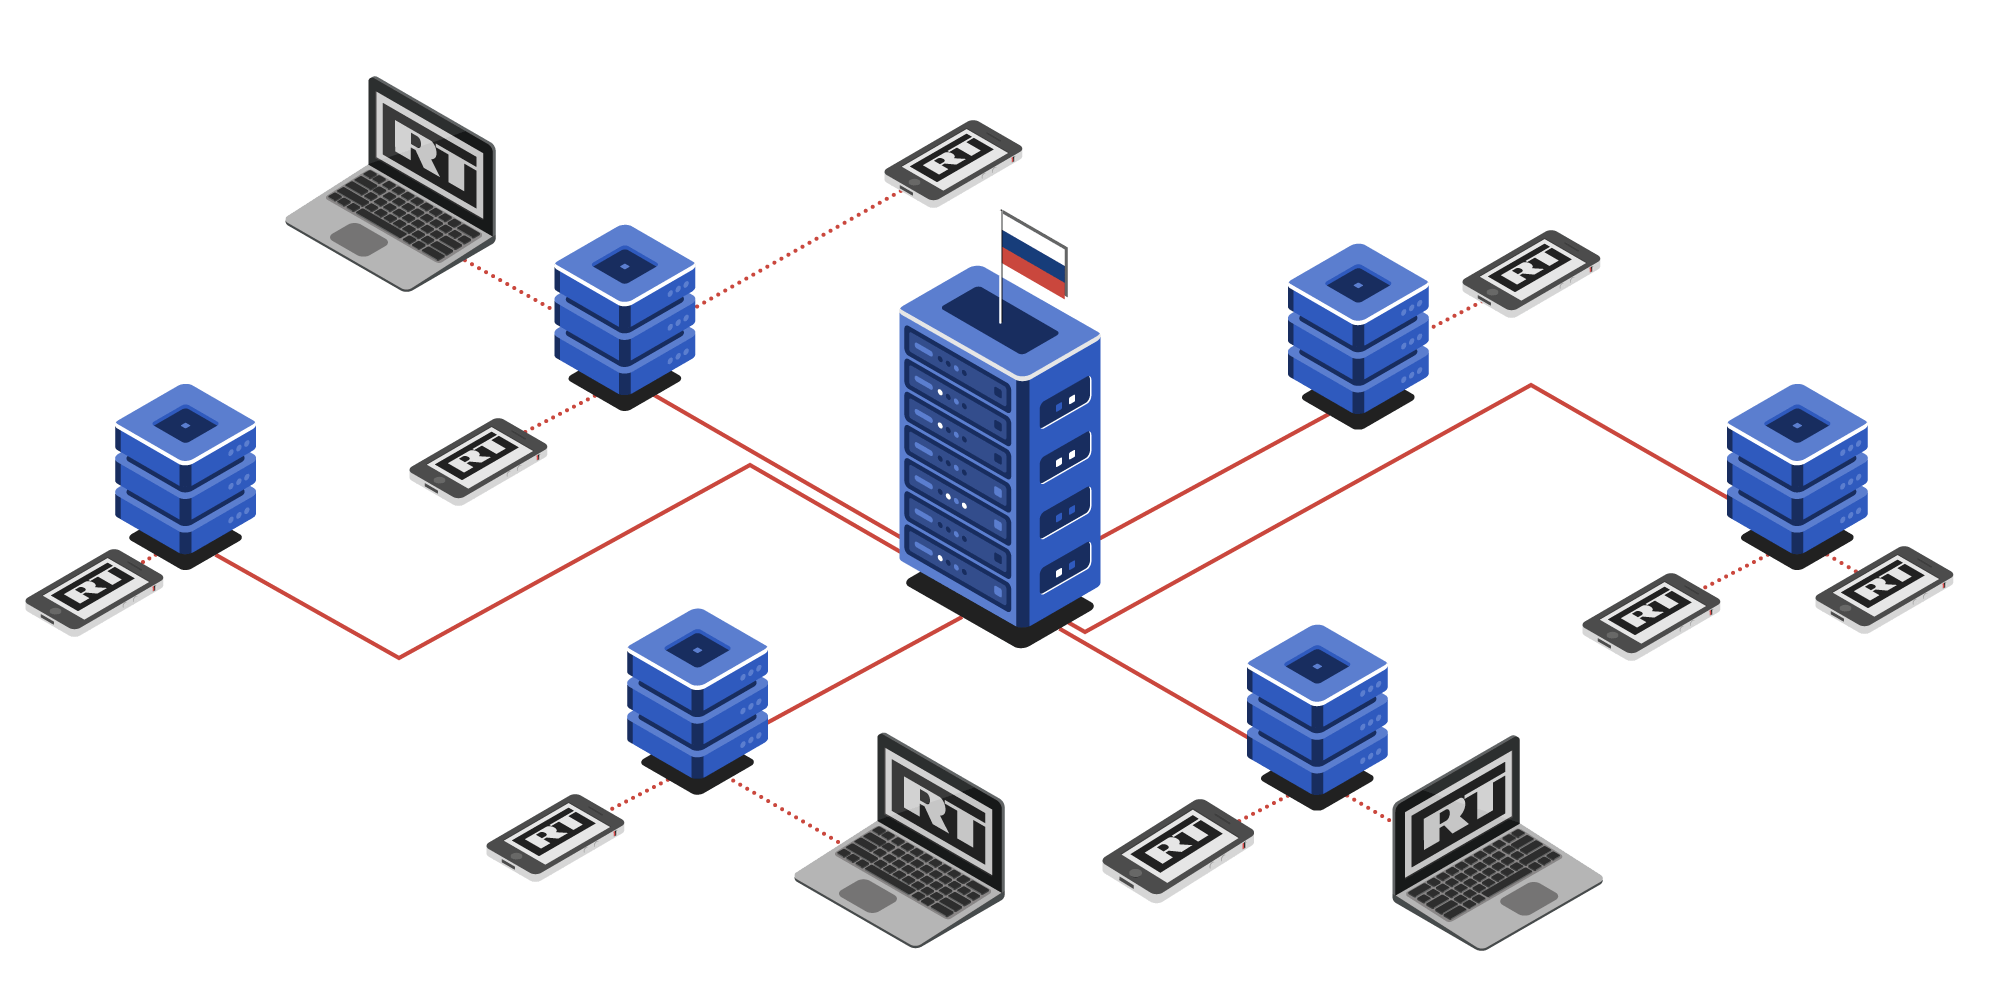 Content delivery Network illustriert mit Russia Today Empfängern